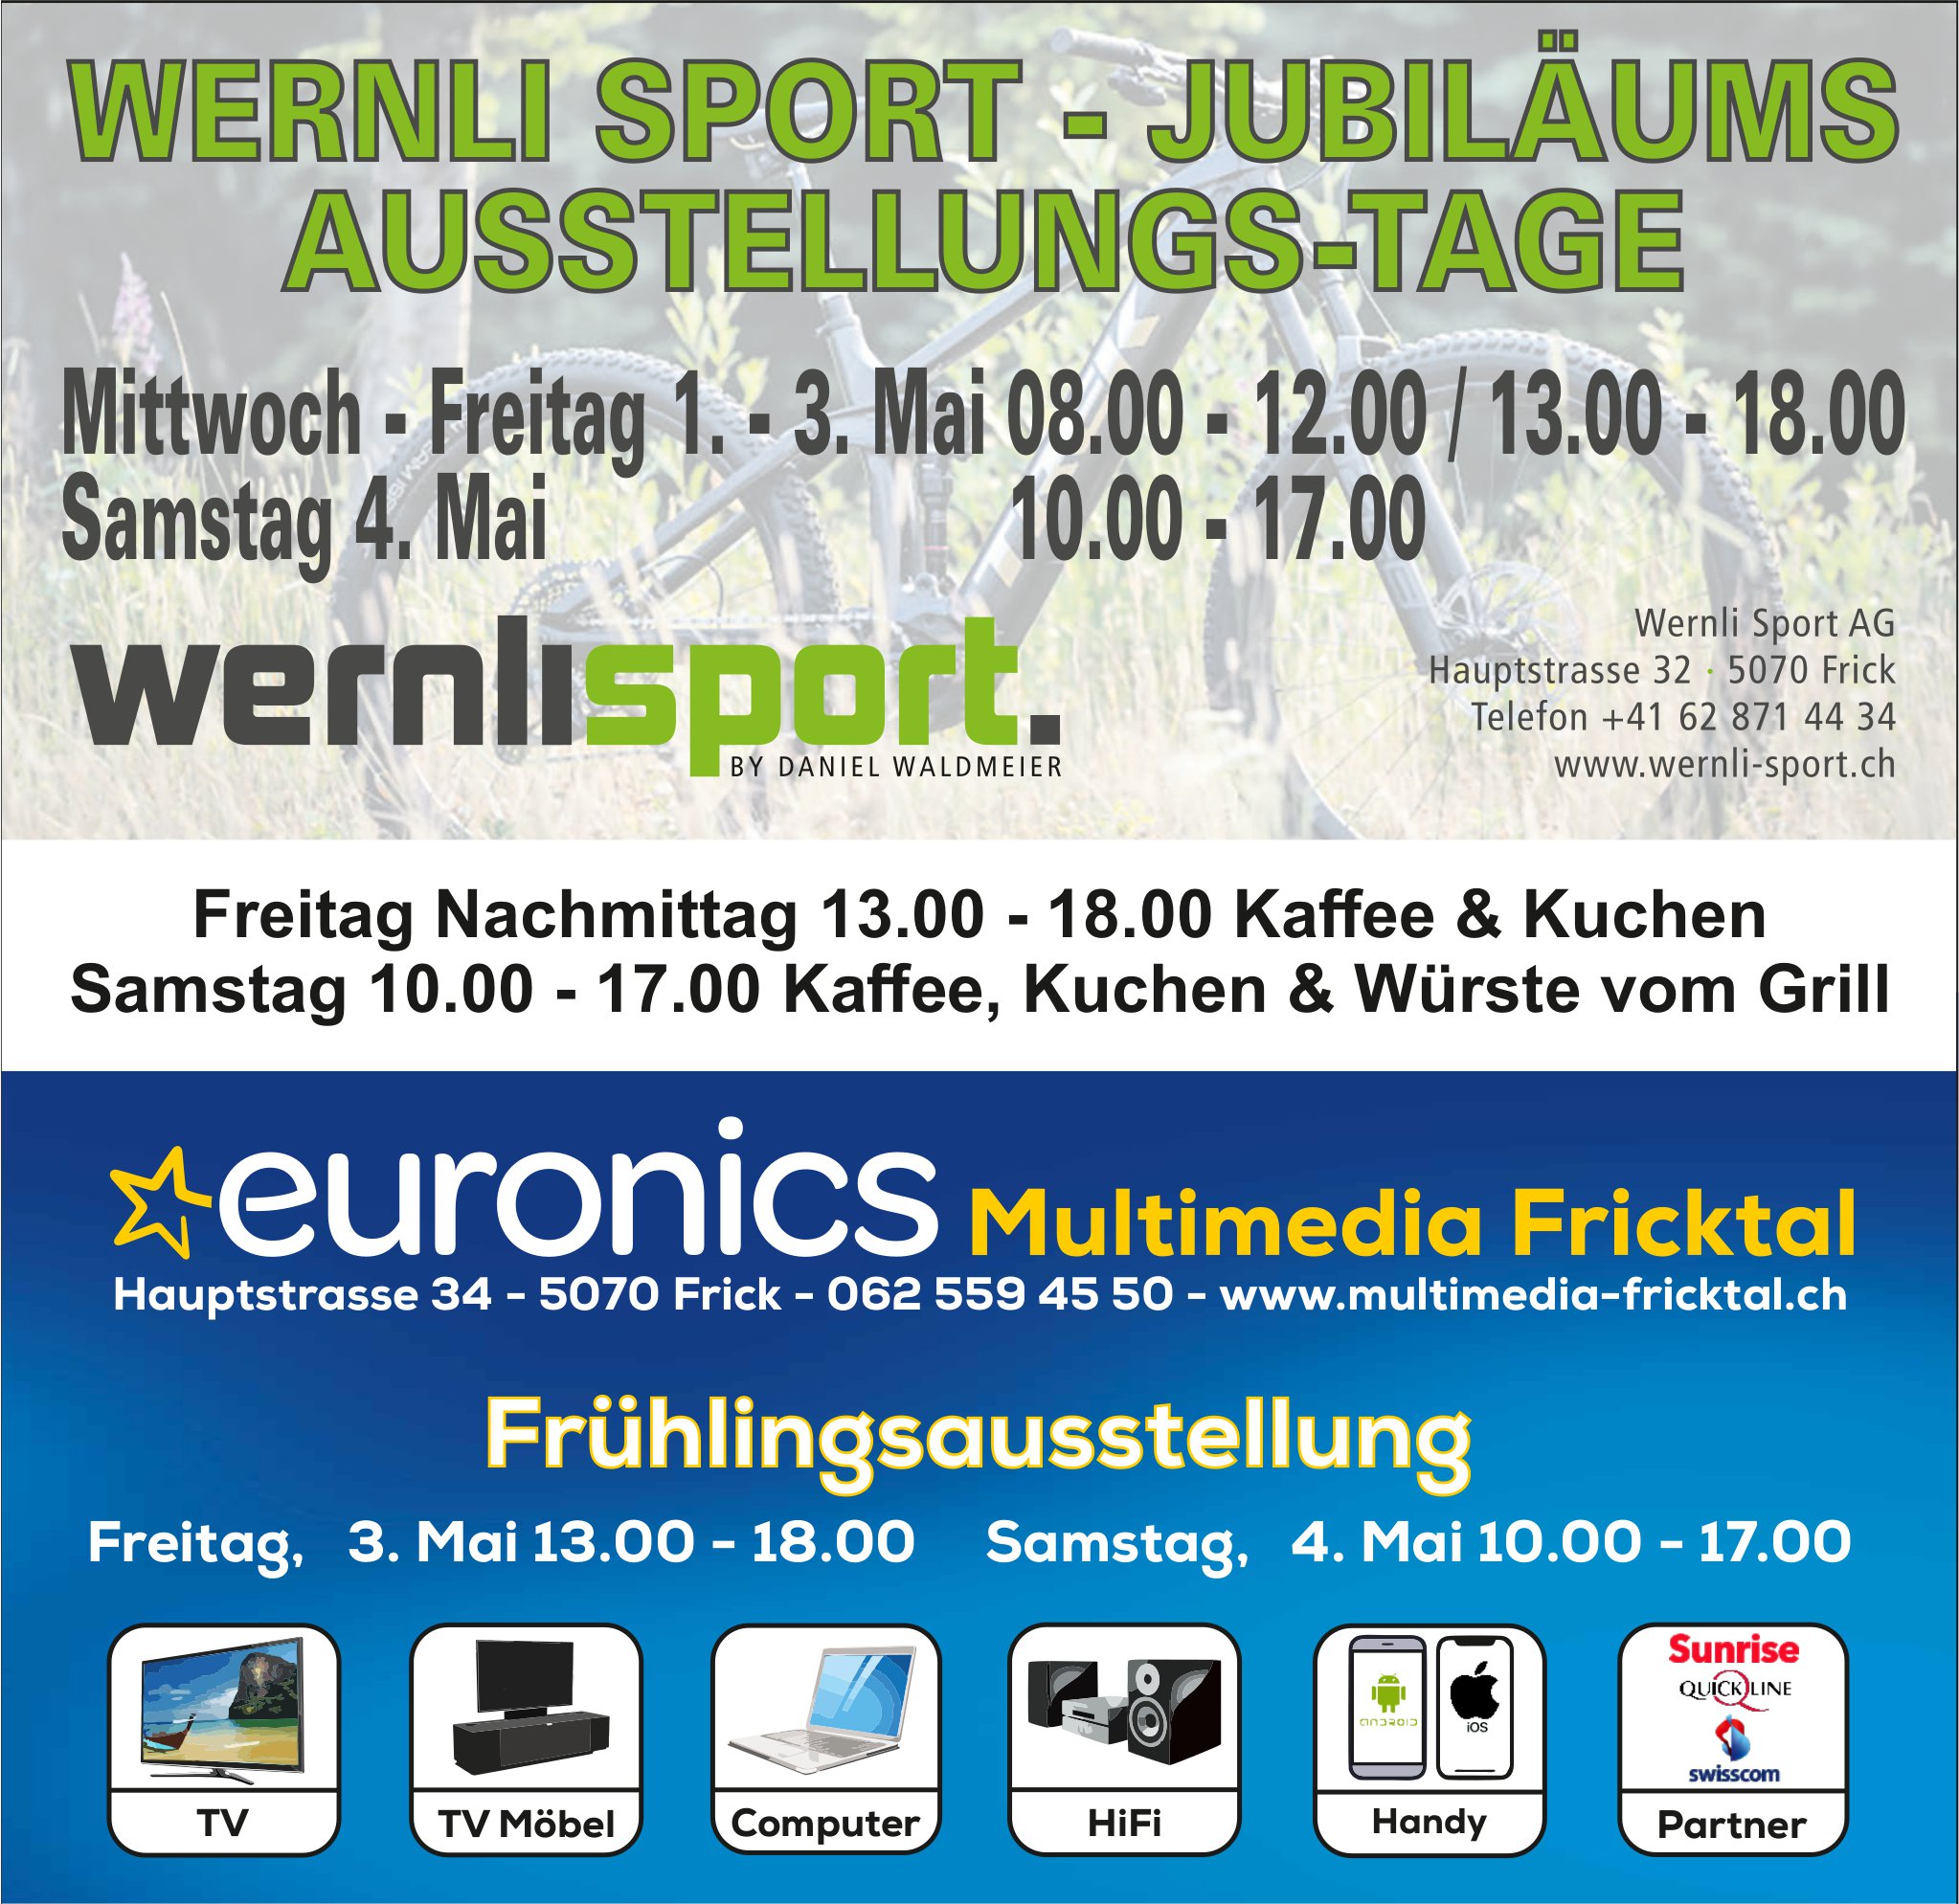 Jubiläums-Ausstellungs-Tage, 1. bis 3. Mai, Wernli Sport AG, Frick